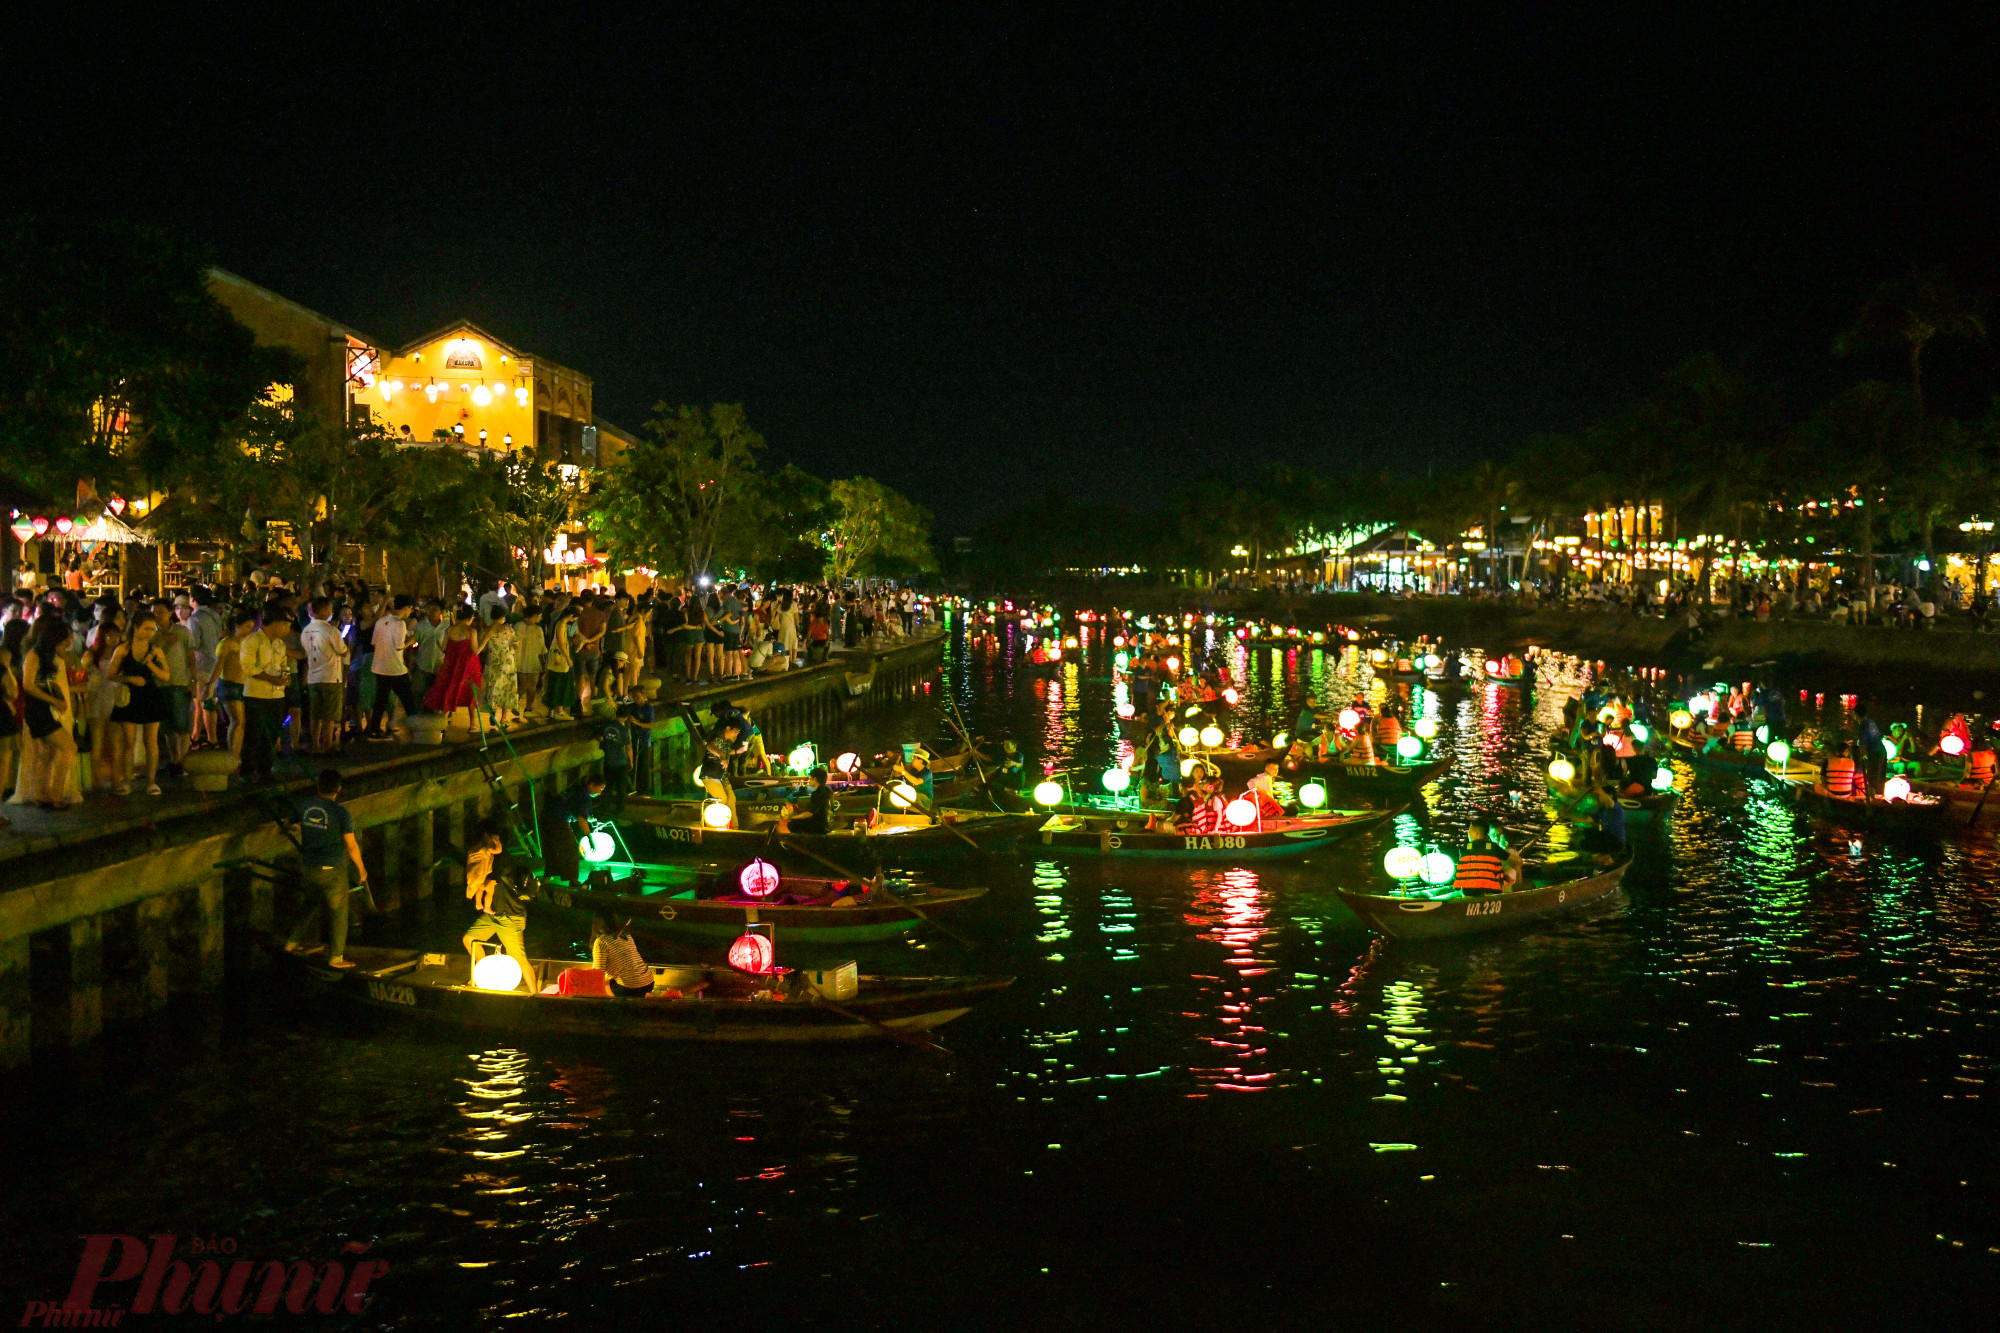 Về đêm, toàn bộ hội an được thắp sáng bằng đèn. Những cây cầu, con thuyền dọc bến song hoài lung linh trong ánh đèn lồng